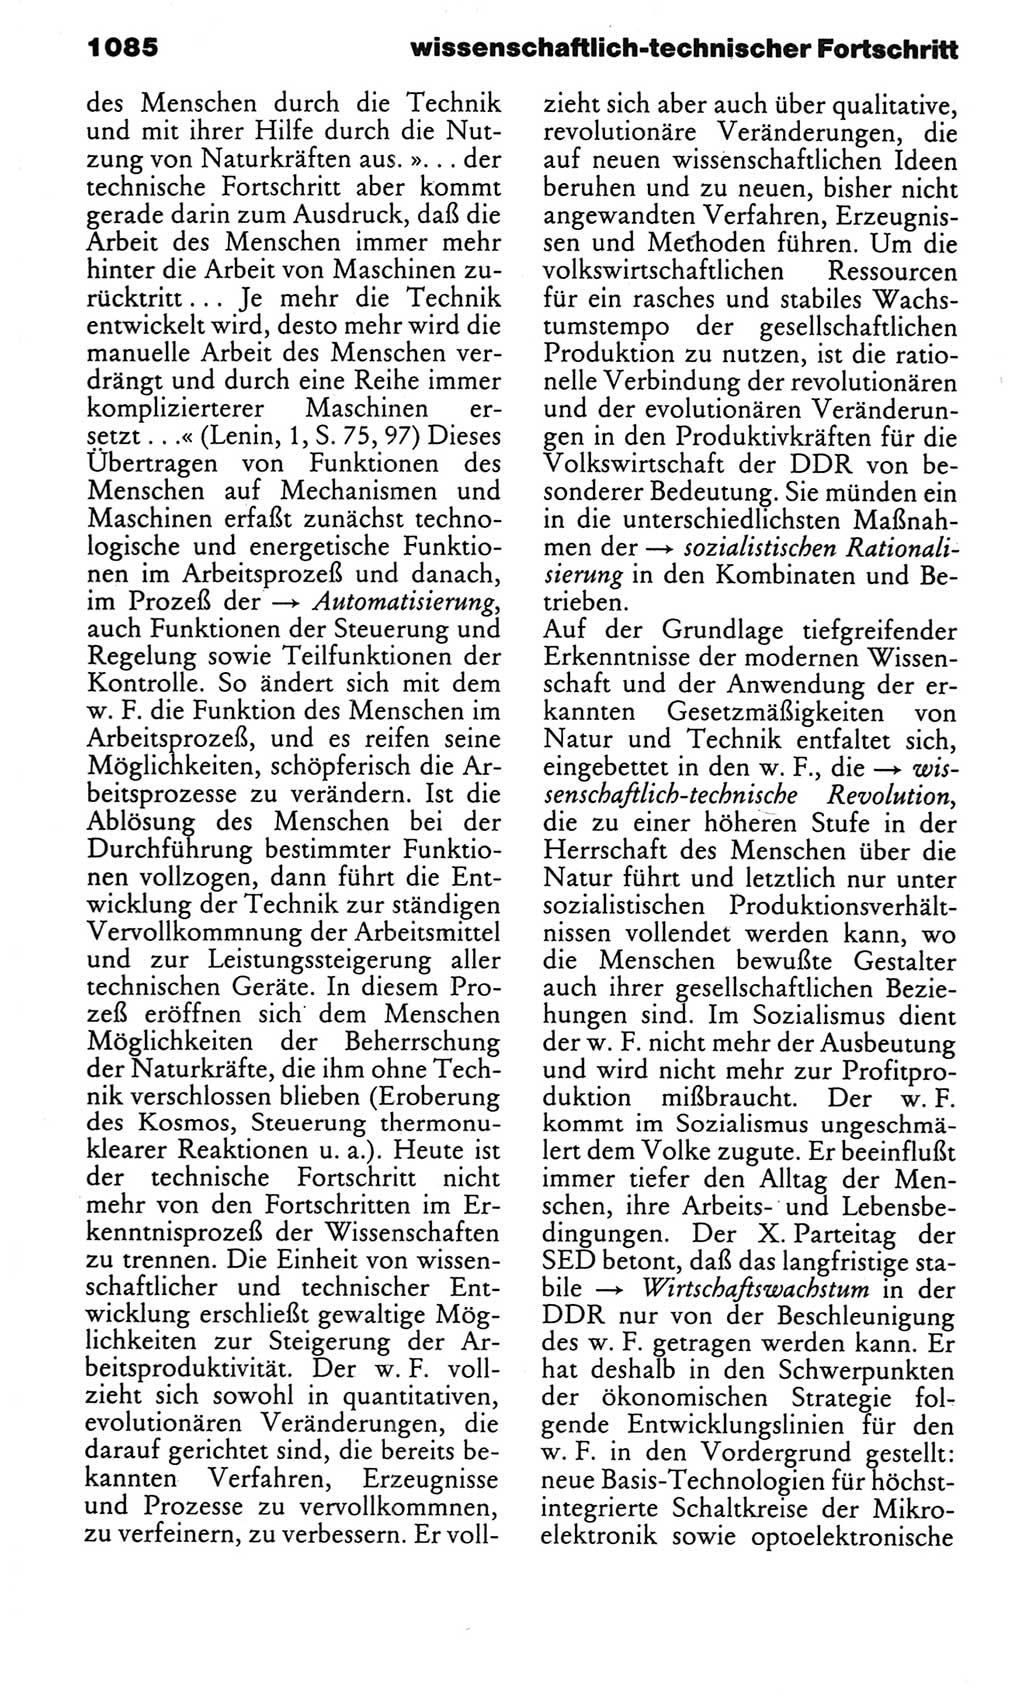 Kleines politisches Wörterbuch [Deutsche Demokratische Republik (DDR)] 1983, Seite 1085 (Kl. pol. Wb. DDR 1983, S. 1085)